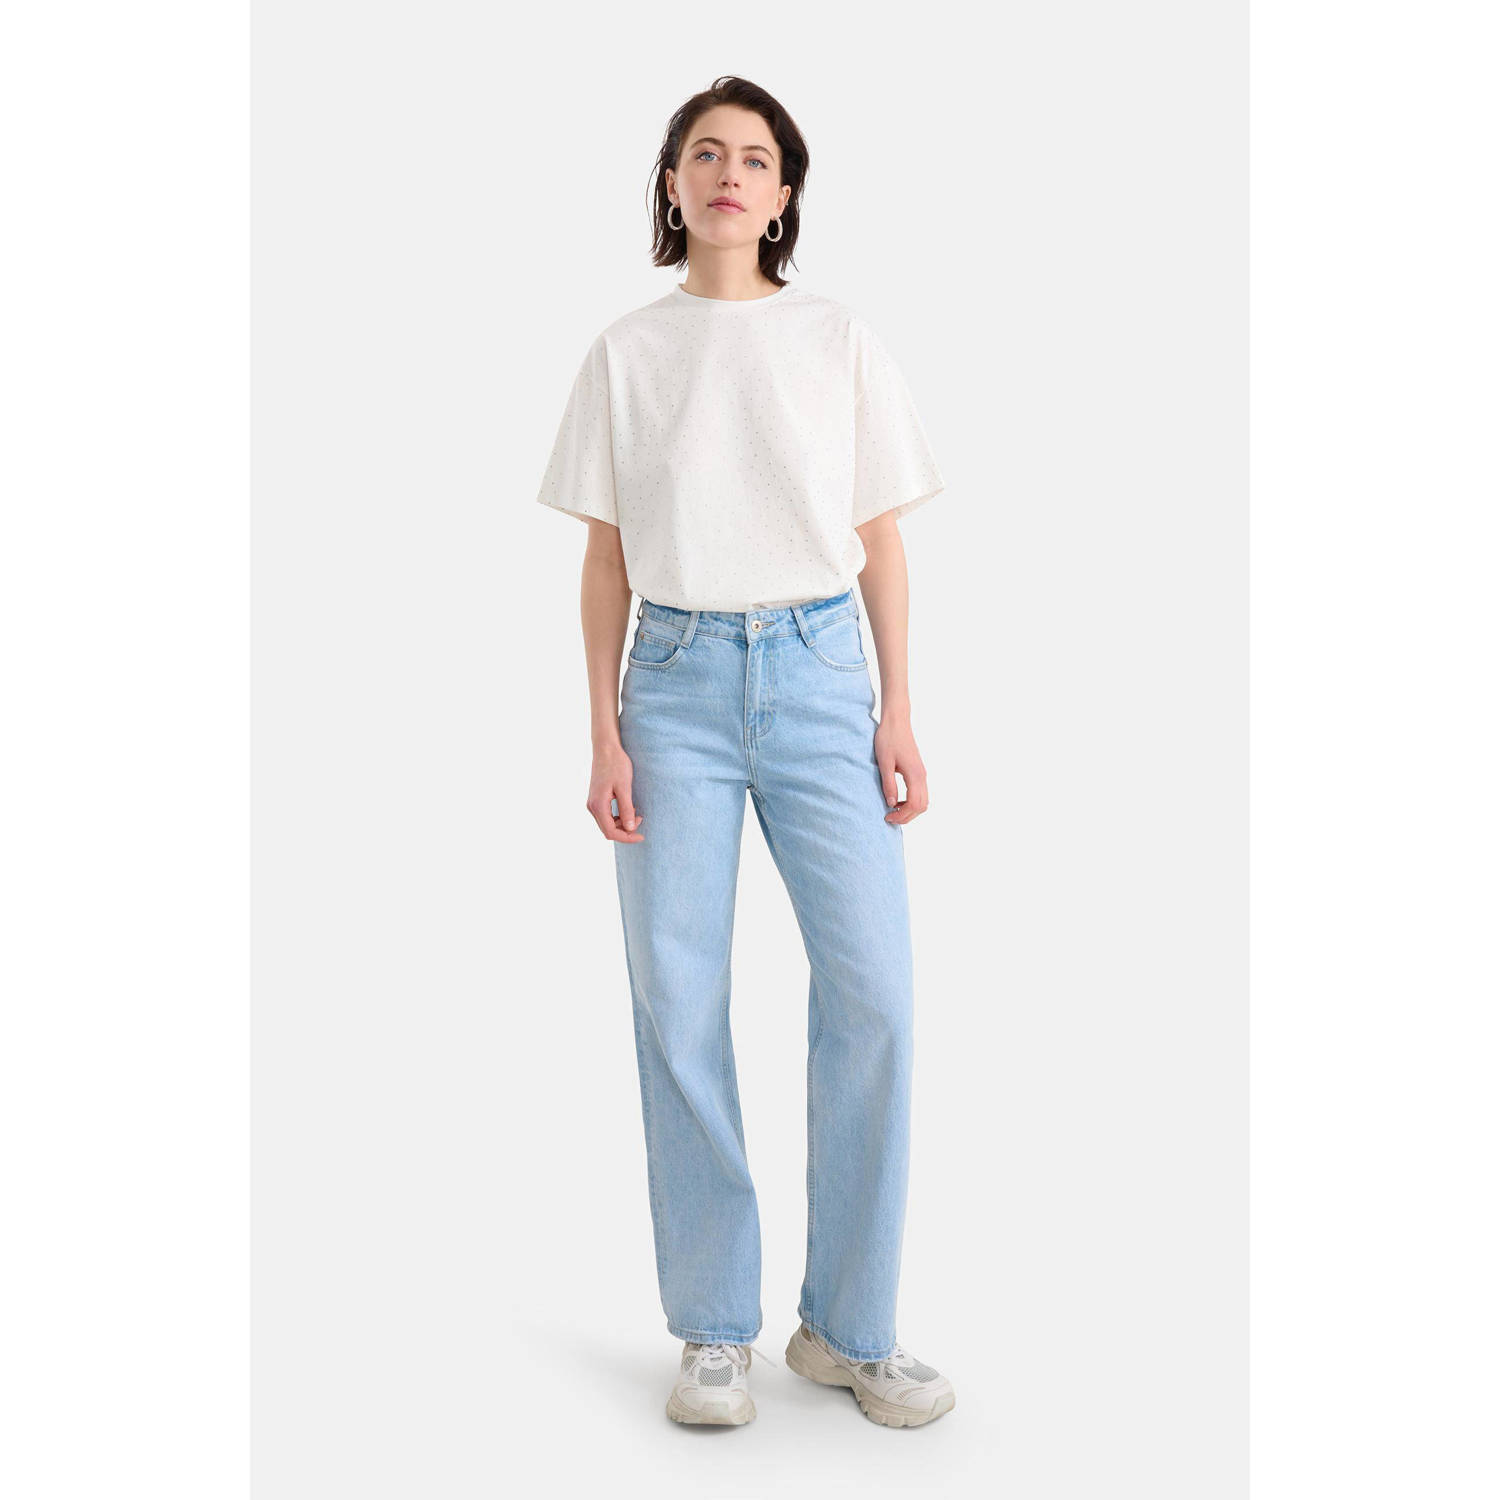 Shoeby high waist loose jeans light blue denim